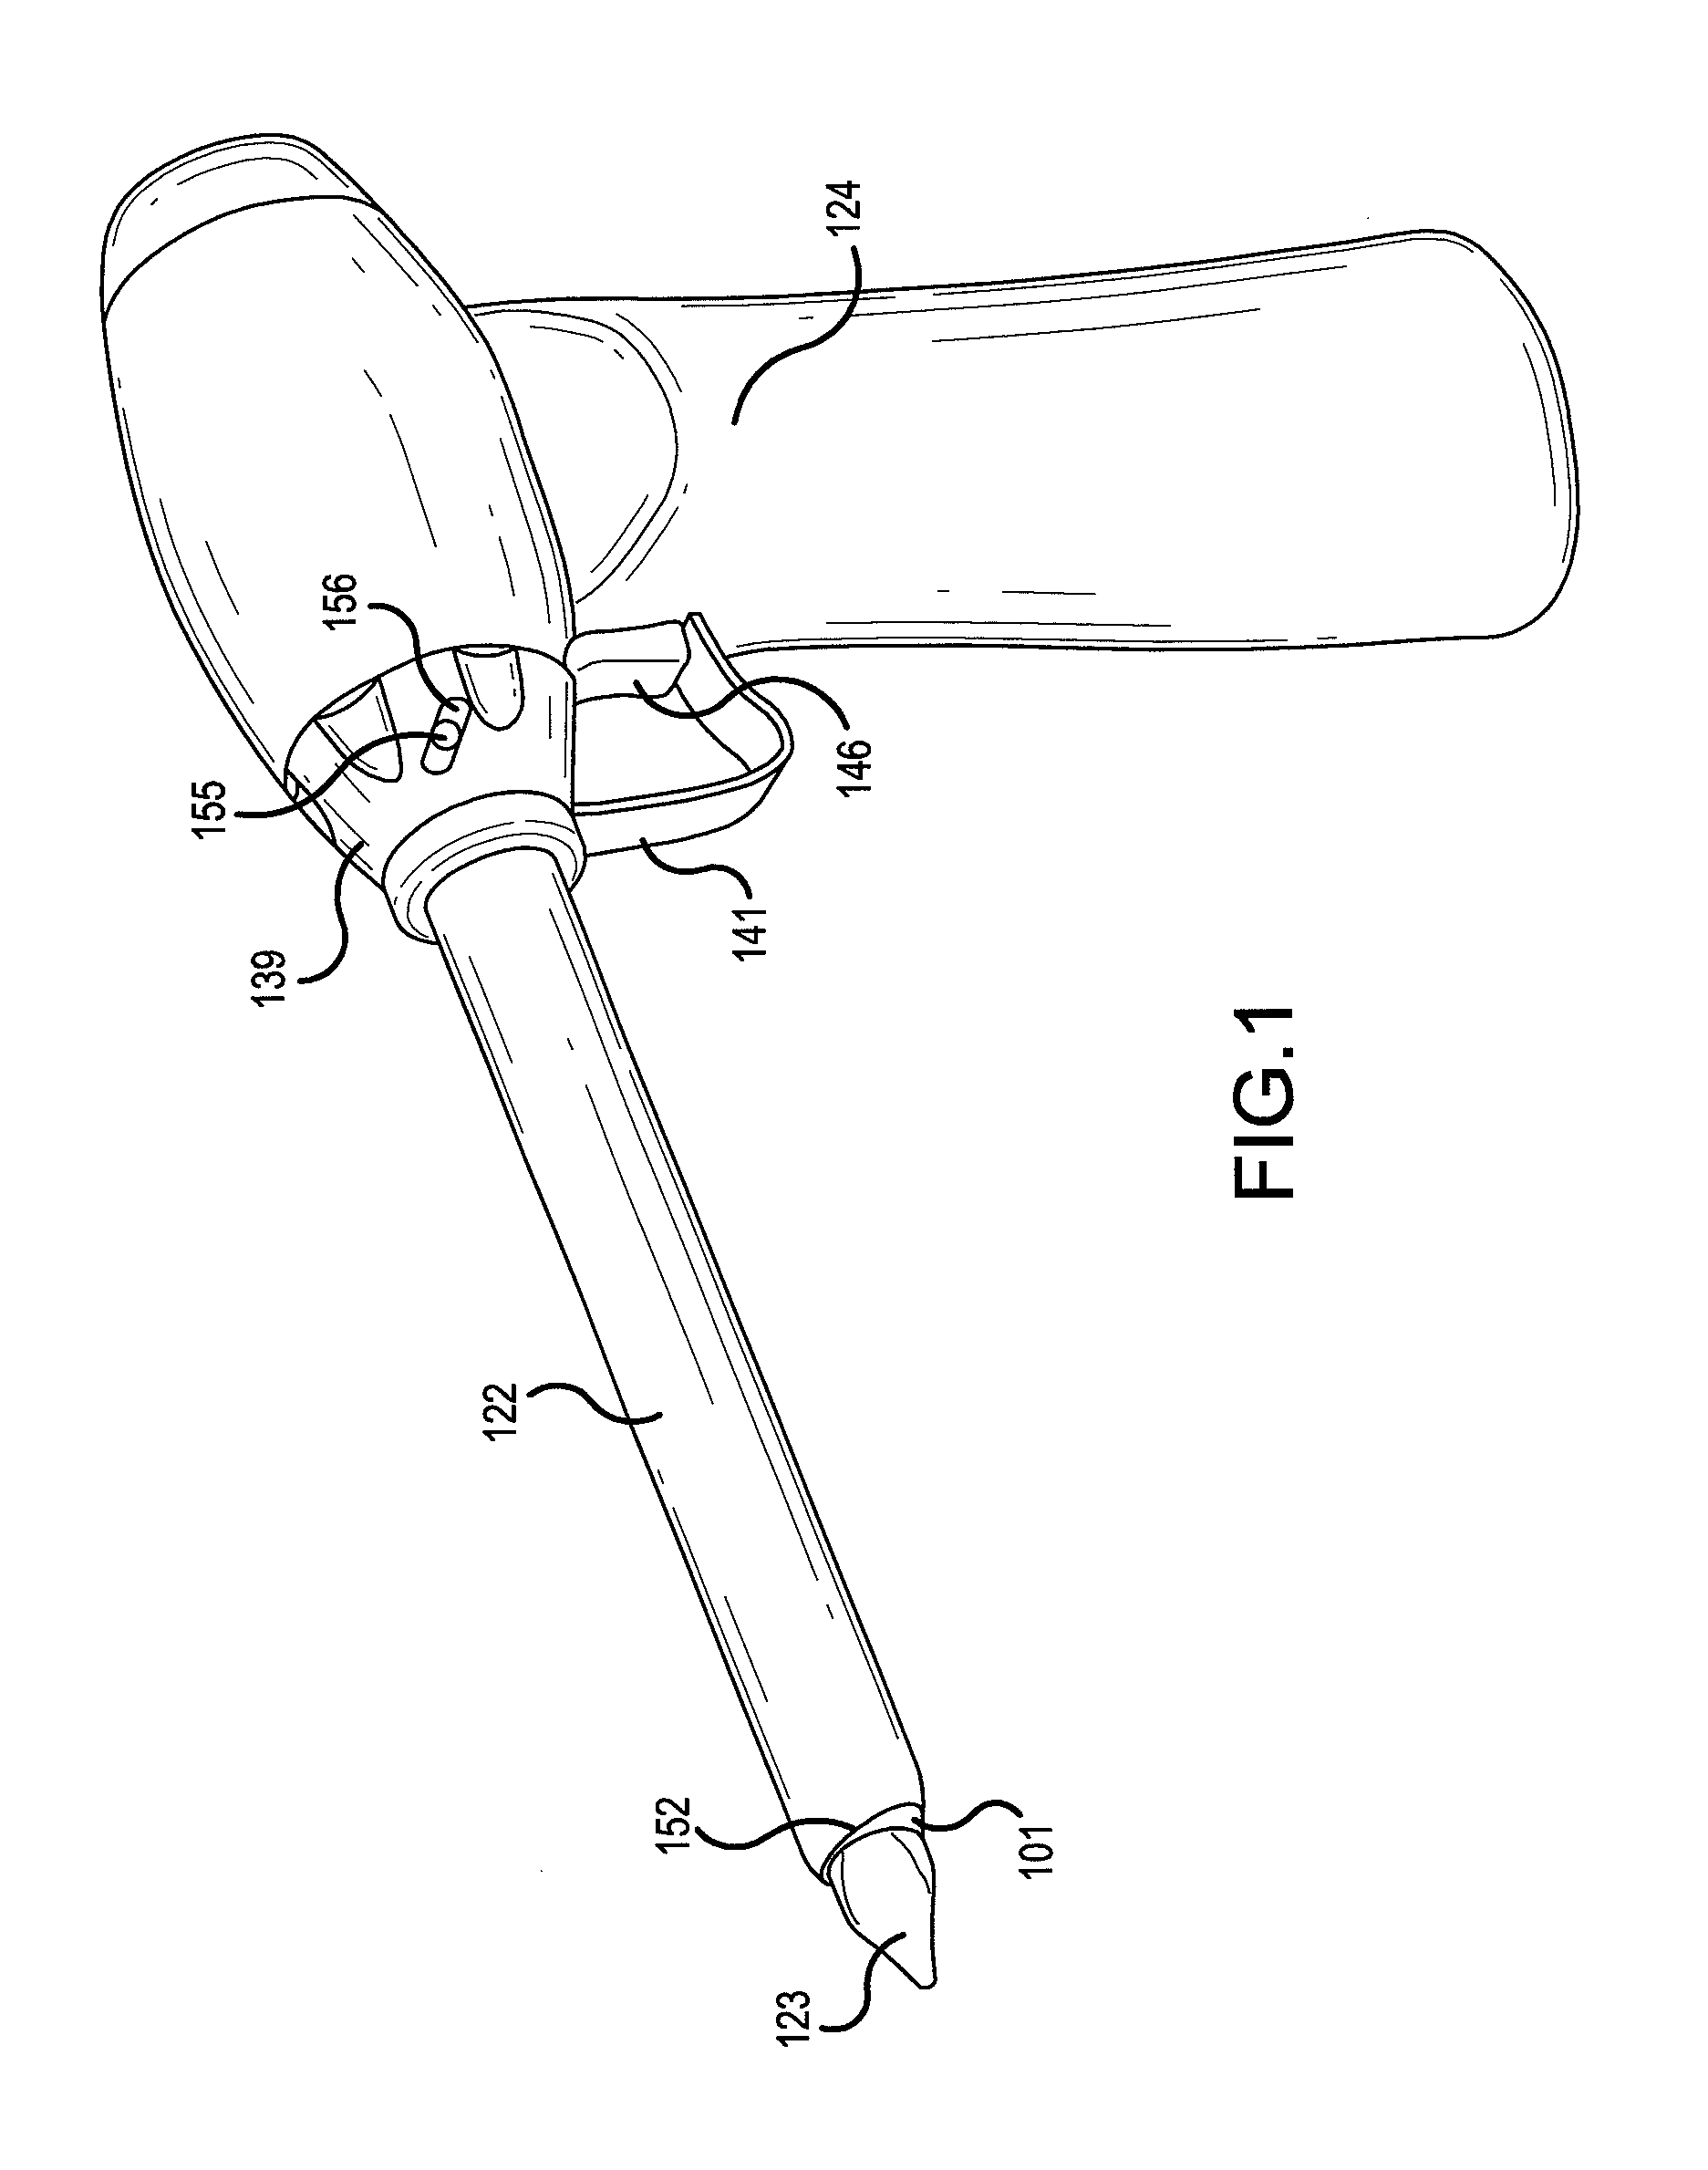 Surgical apparatus